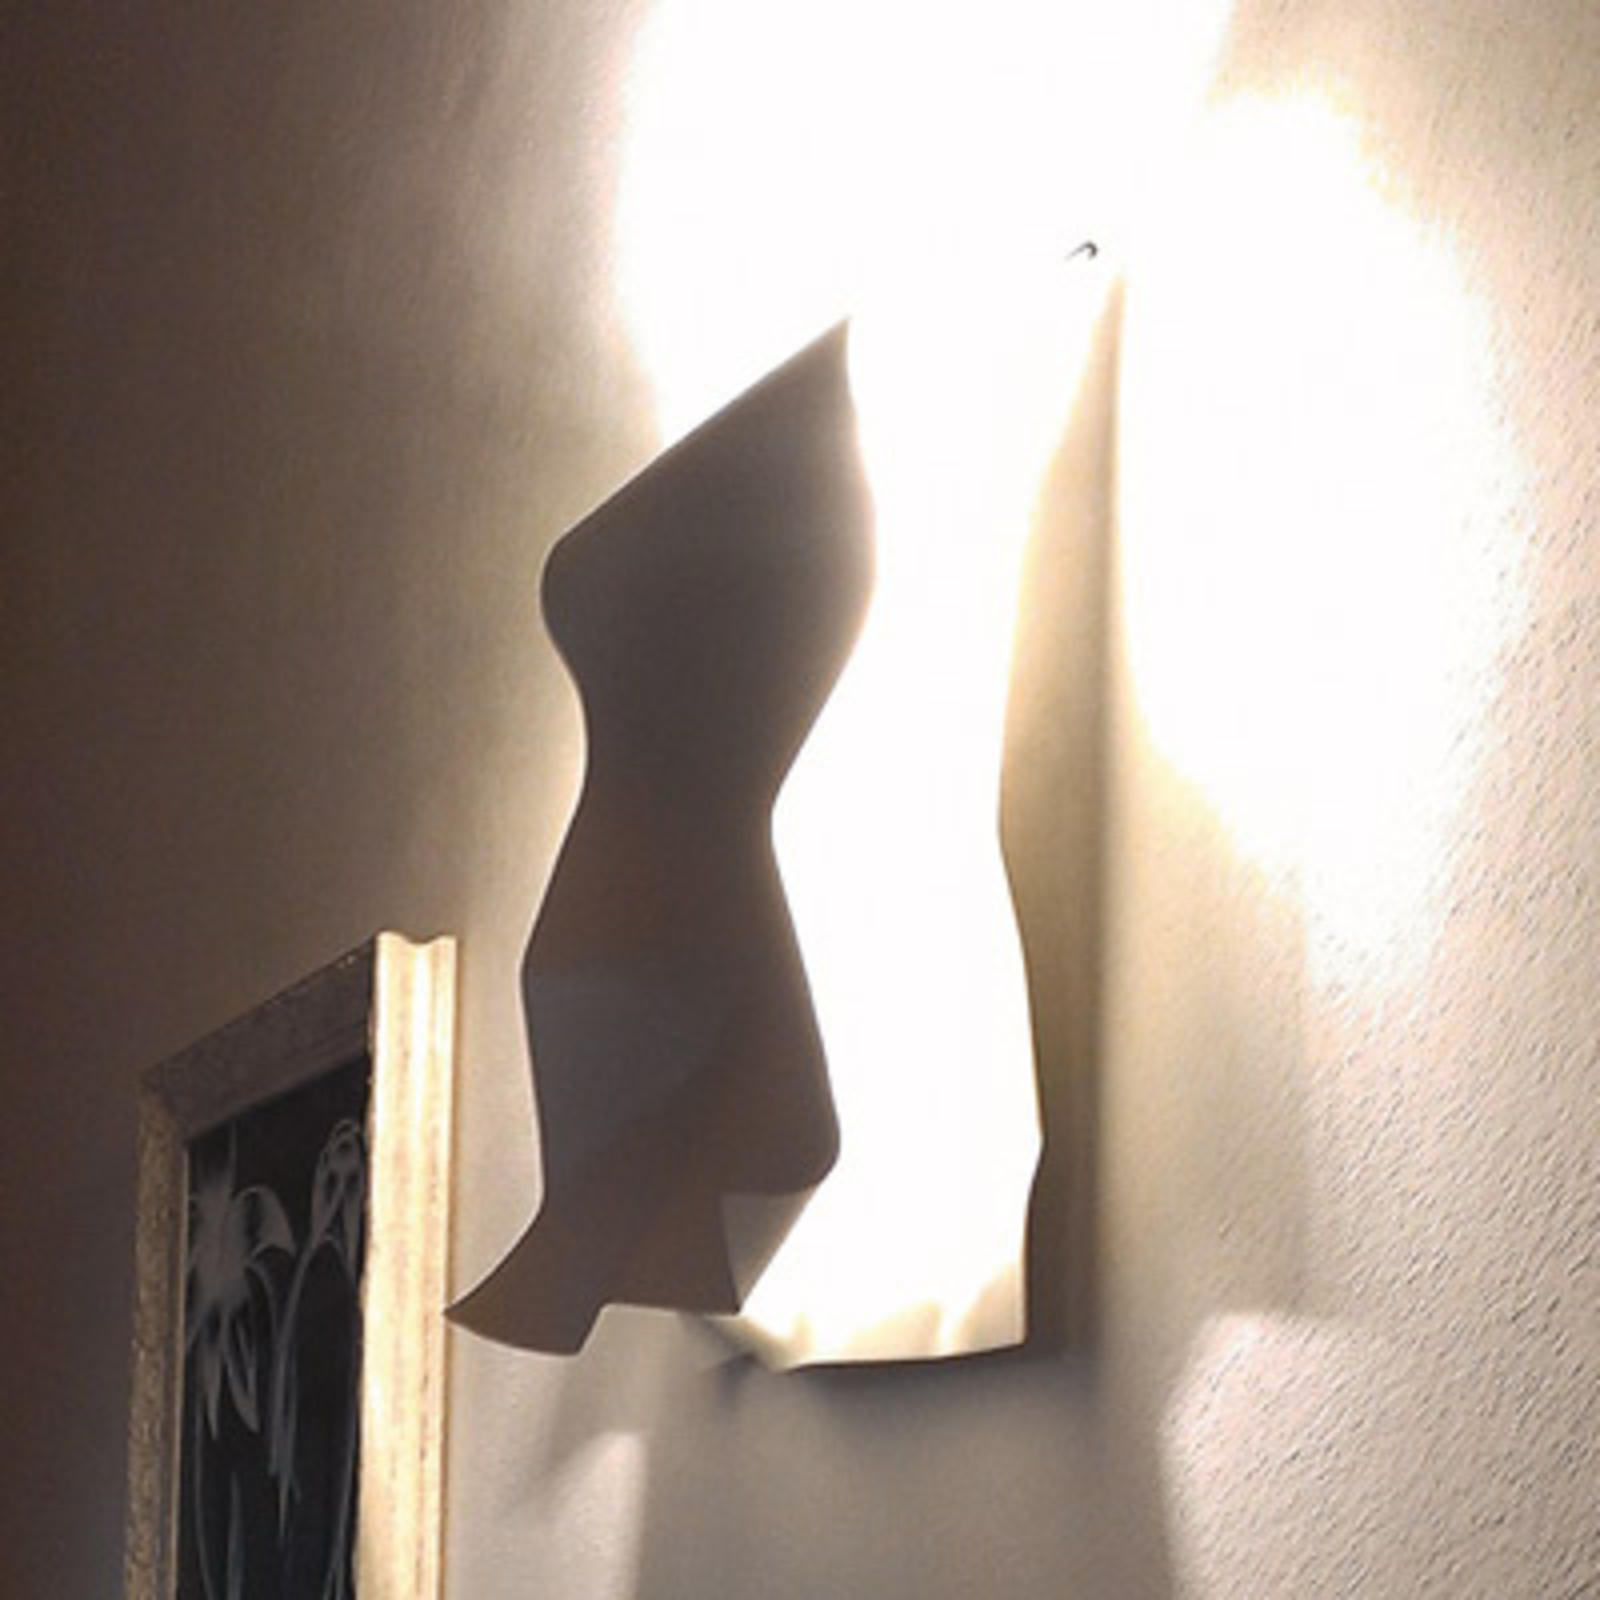 Knikerboker Stendimi - bílé nástěnné LED svítidlo 40 cm